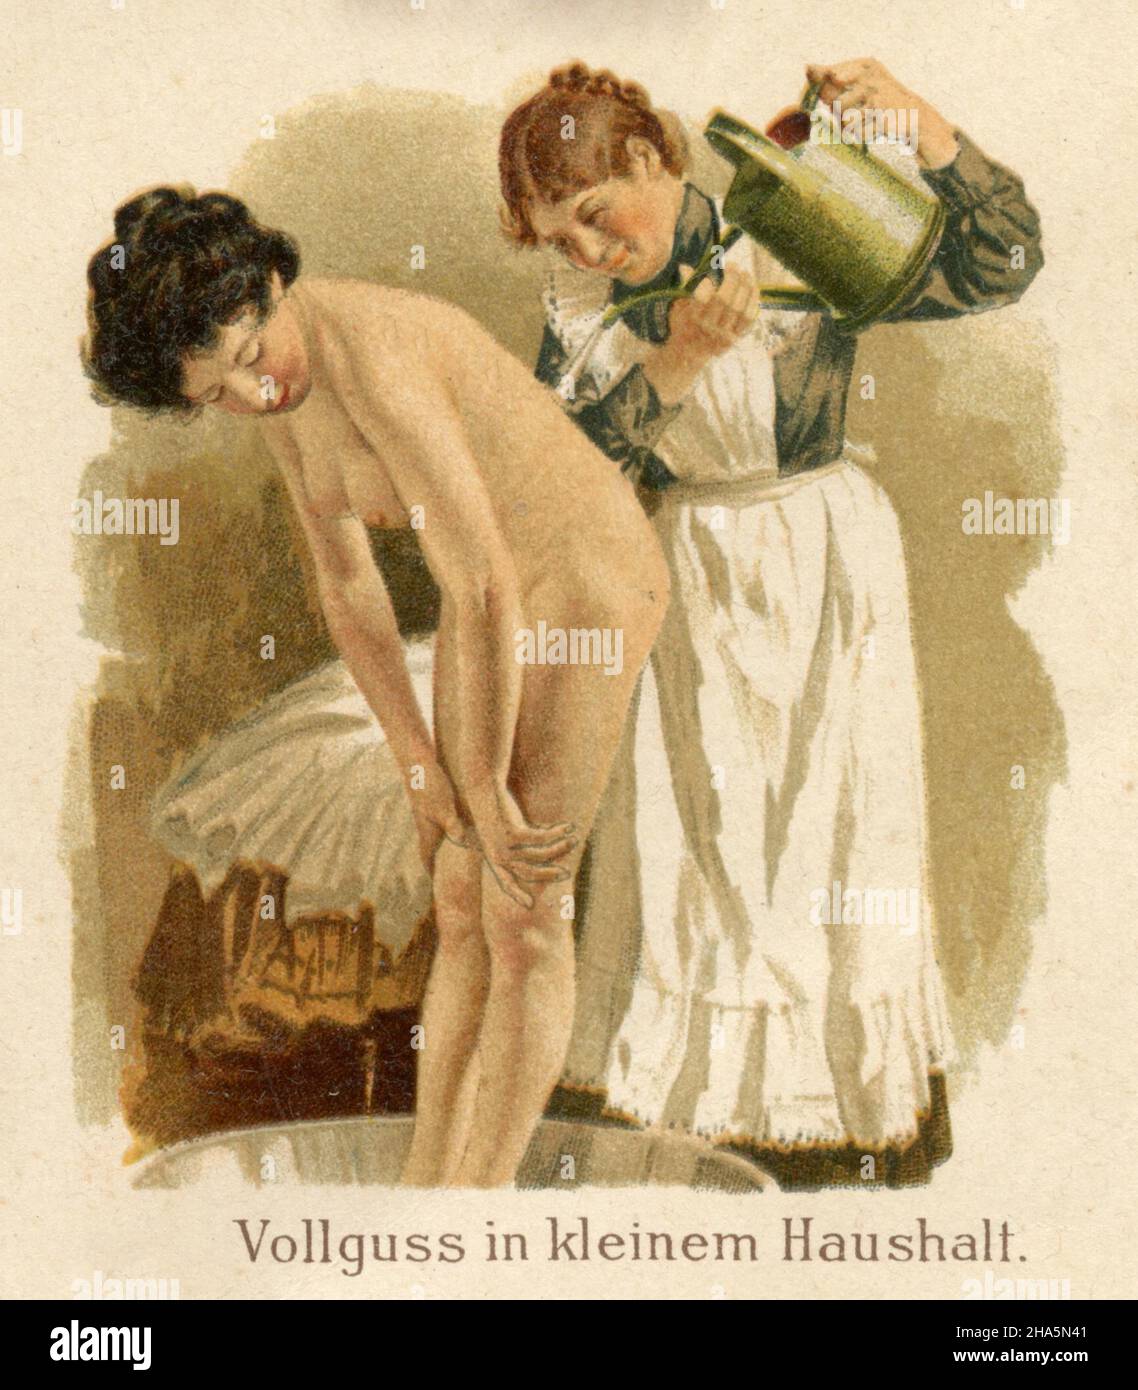 Aplicaciones de agua en enfermería: Vertido completo en un hogar pequeño , (libro de medicina, 1905) Foto de stock